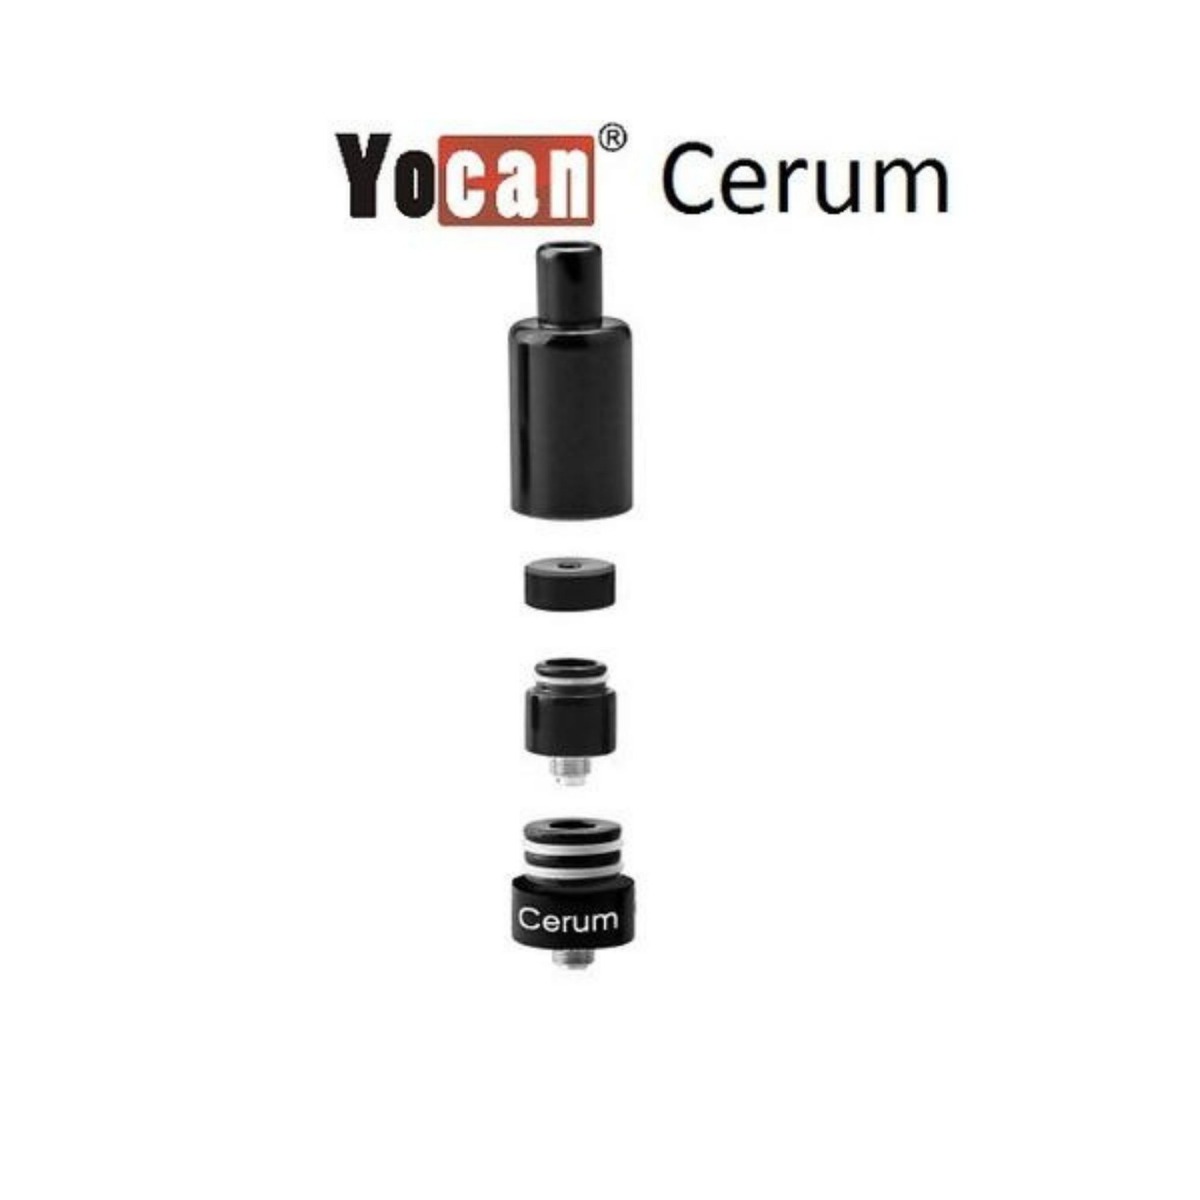 Yocan cerum atomizer taken apart